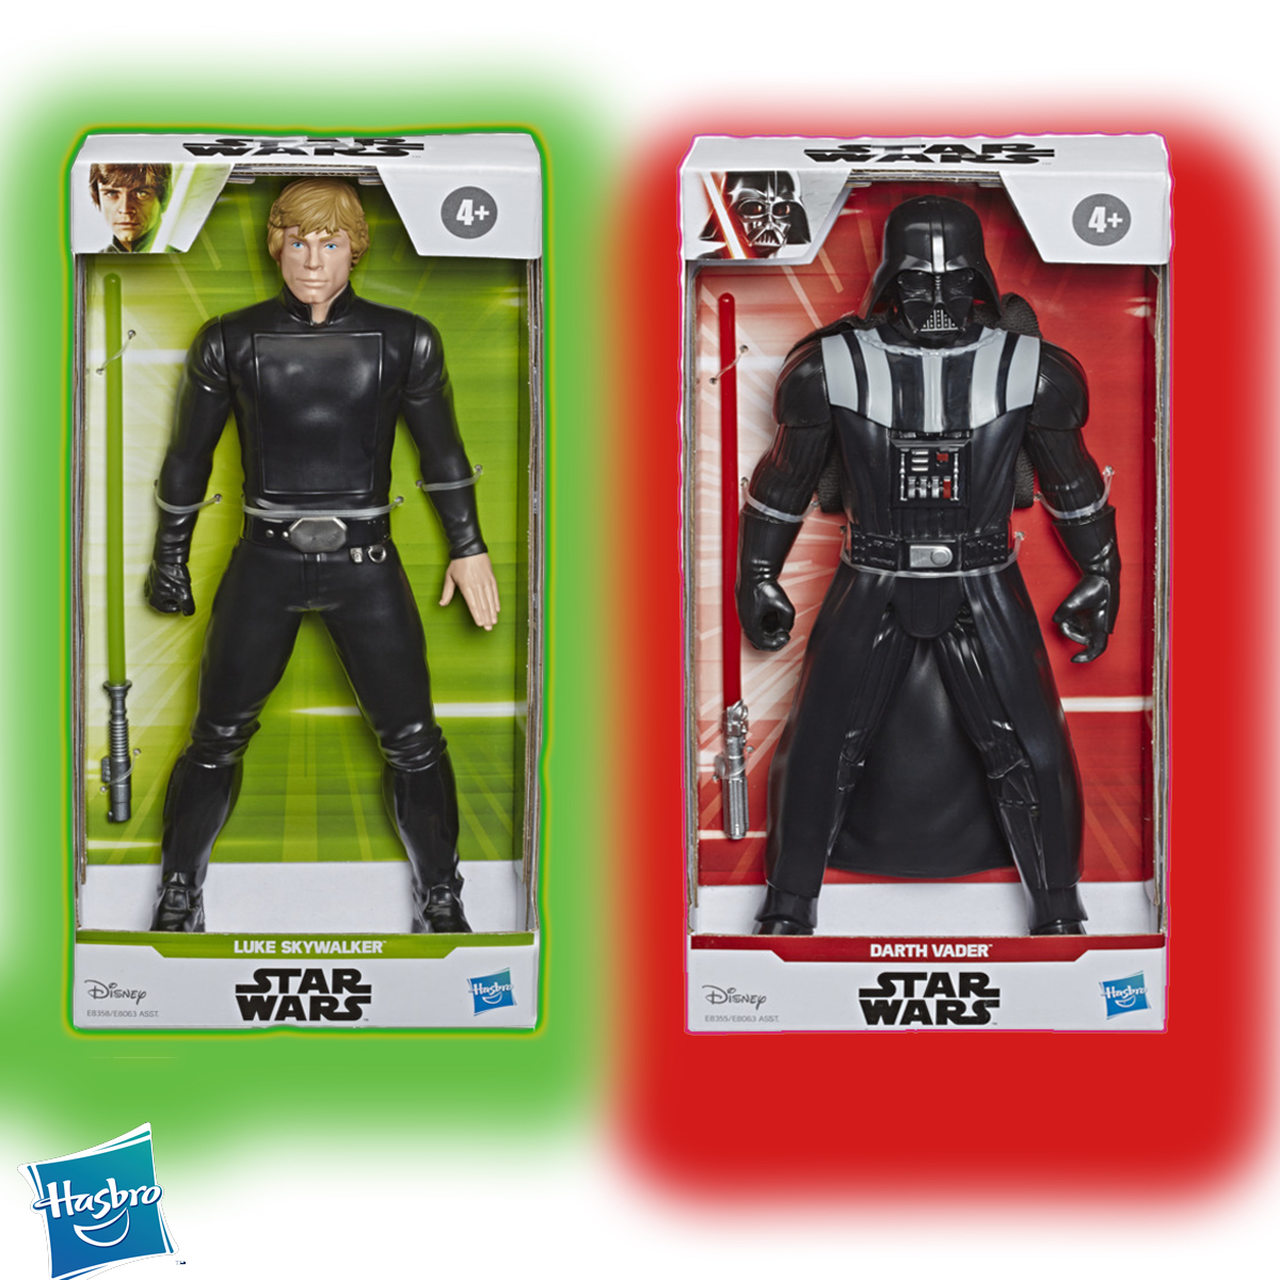 Kit Bonecos Star Wars Luke Skywalker vs. Darth Vader Hasbro